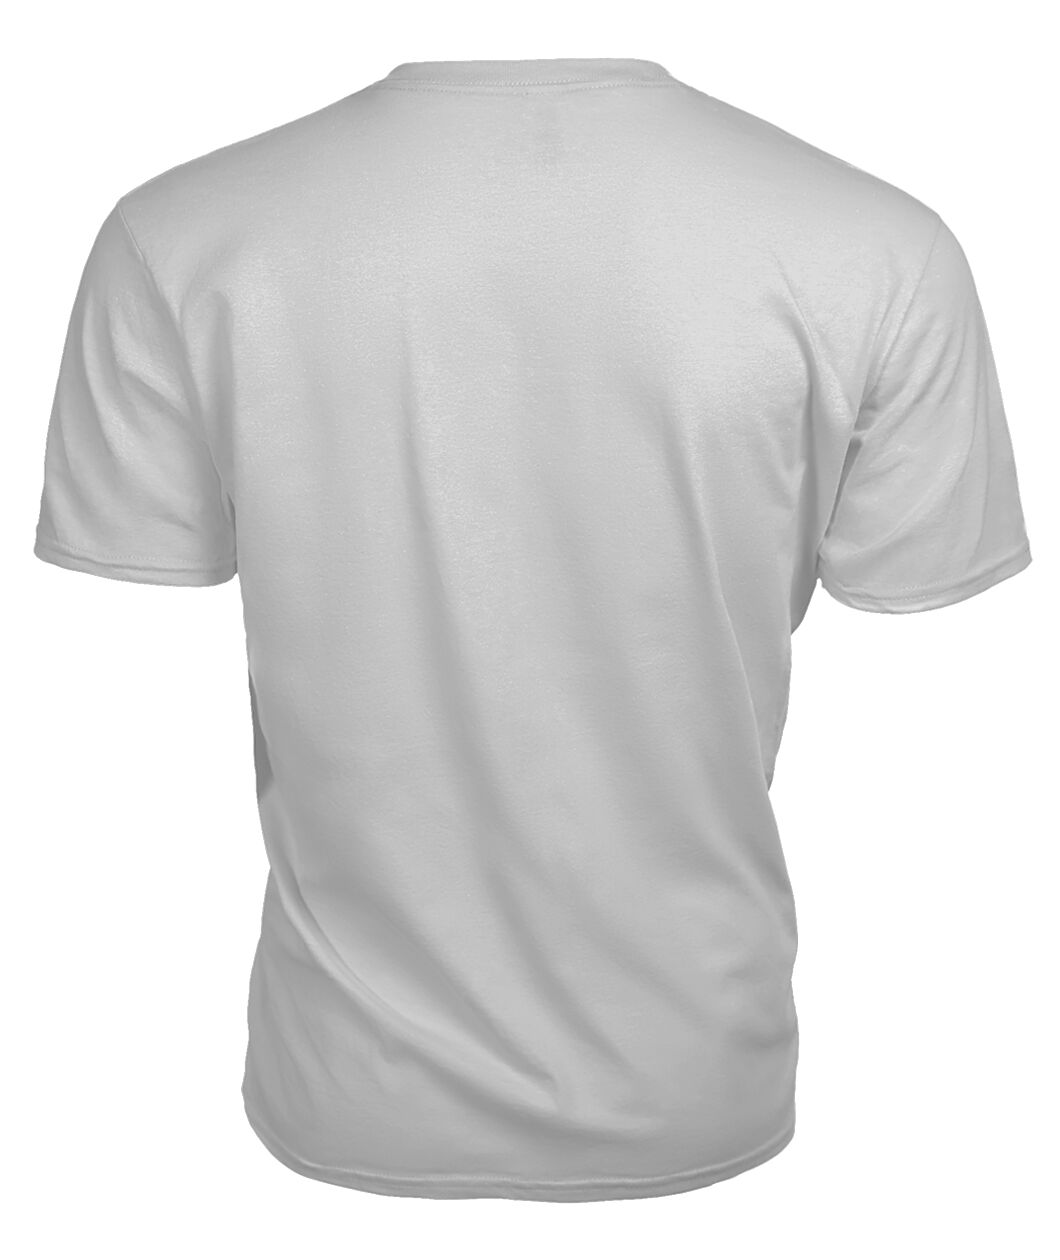 Weir Family Tartan - 2D T-shirt